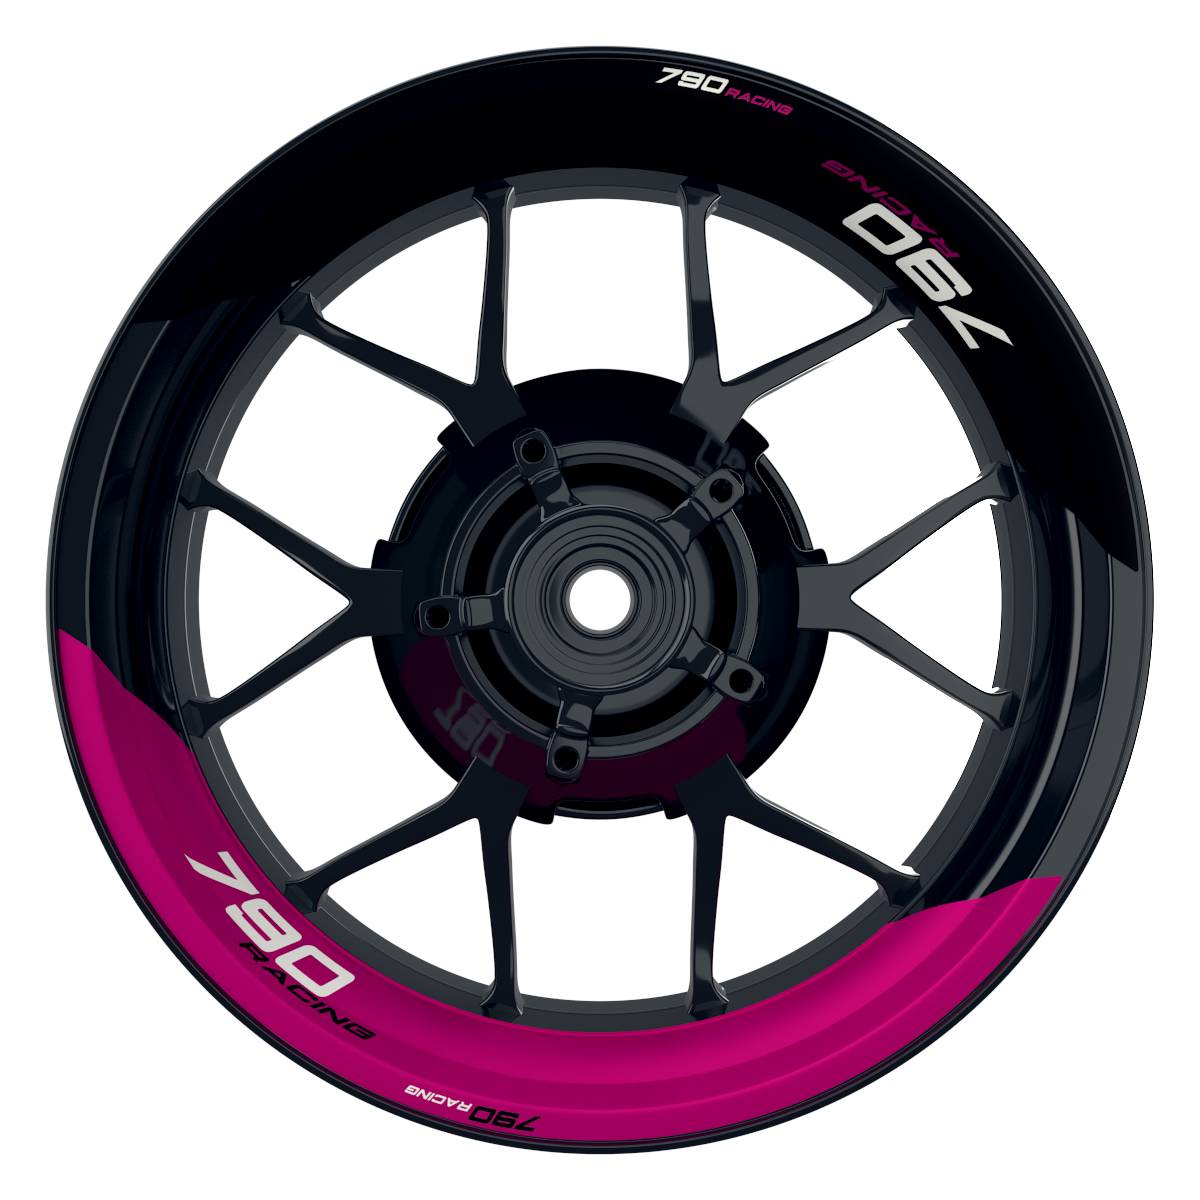 KTM Racing 790 halb halb schwarz pink Frontansicht